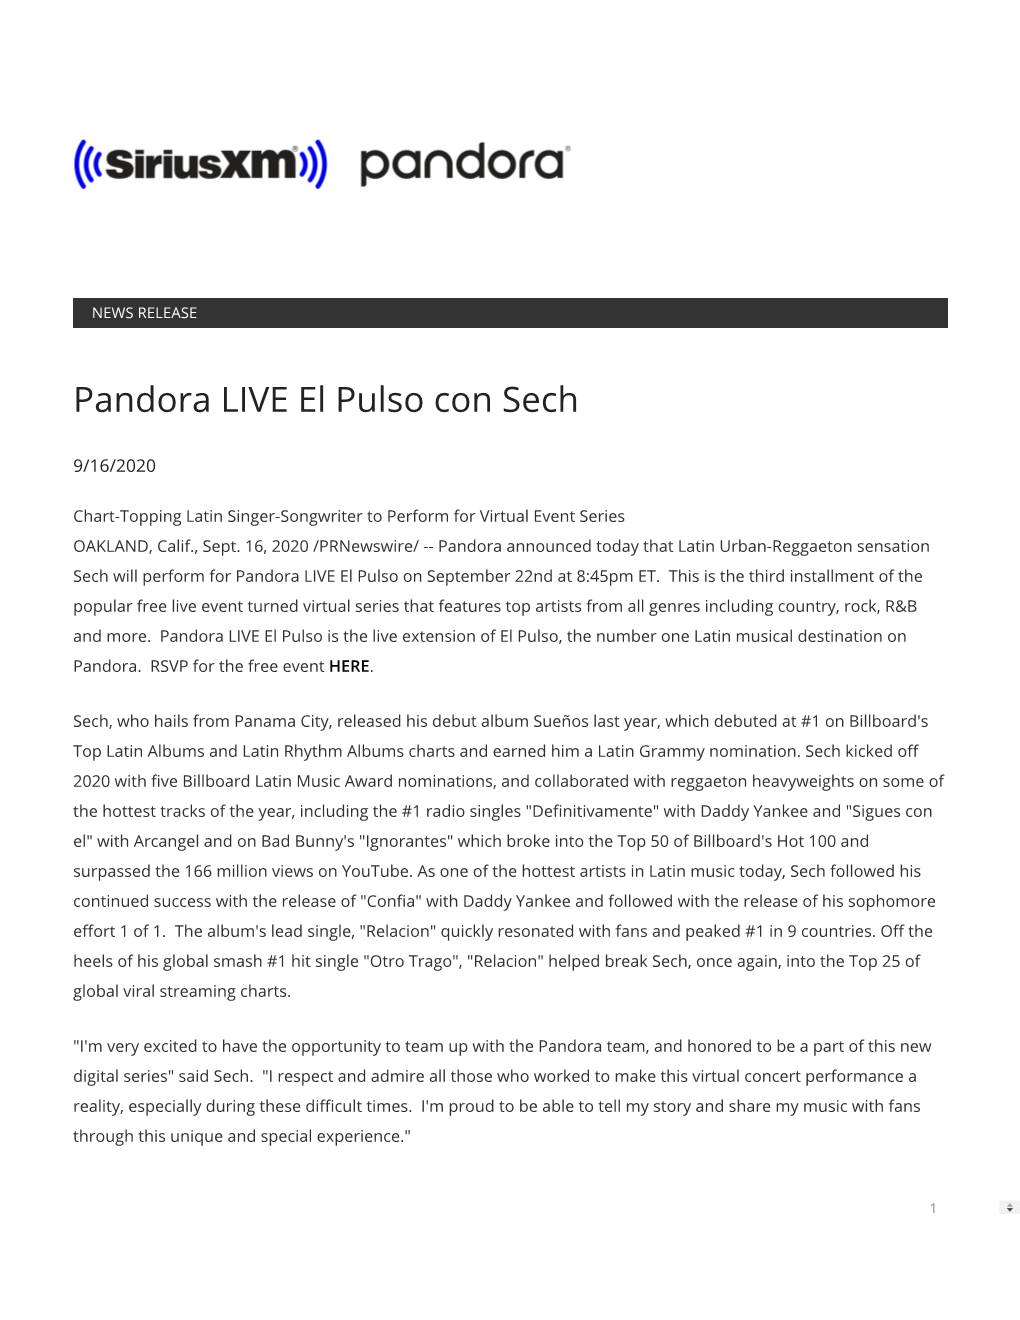 Pandora LIVE El Pulso Con Sech